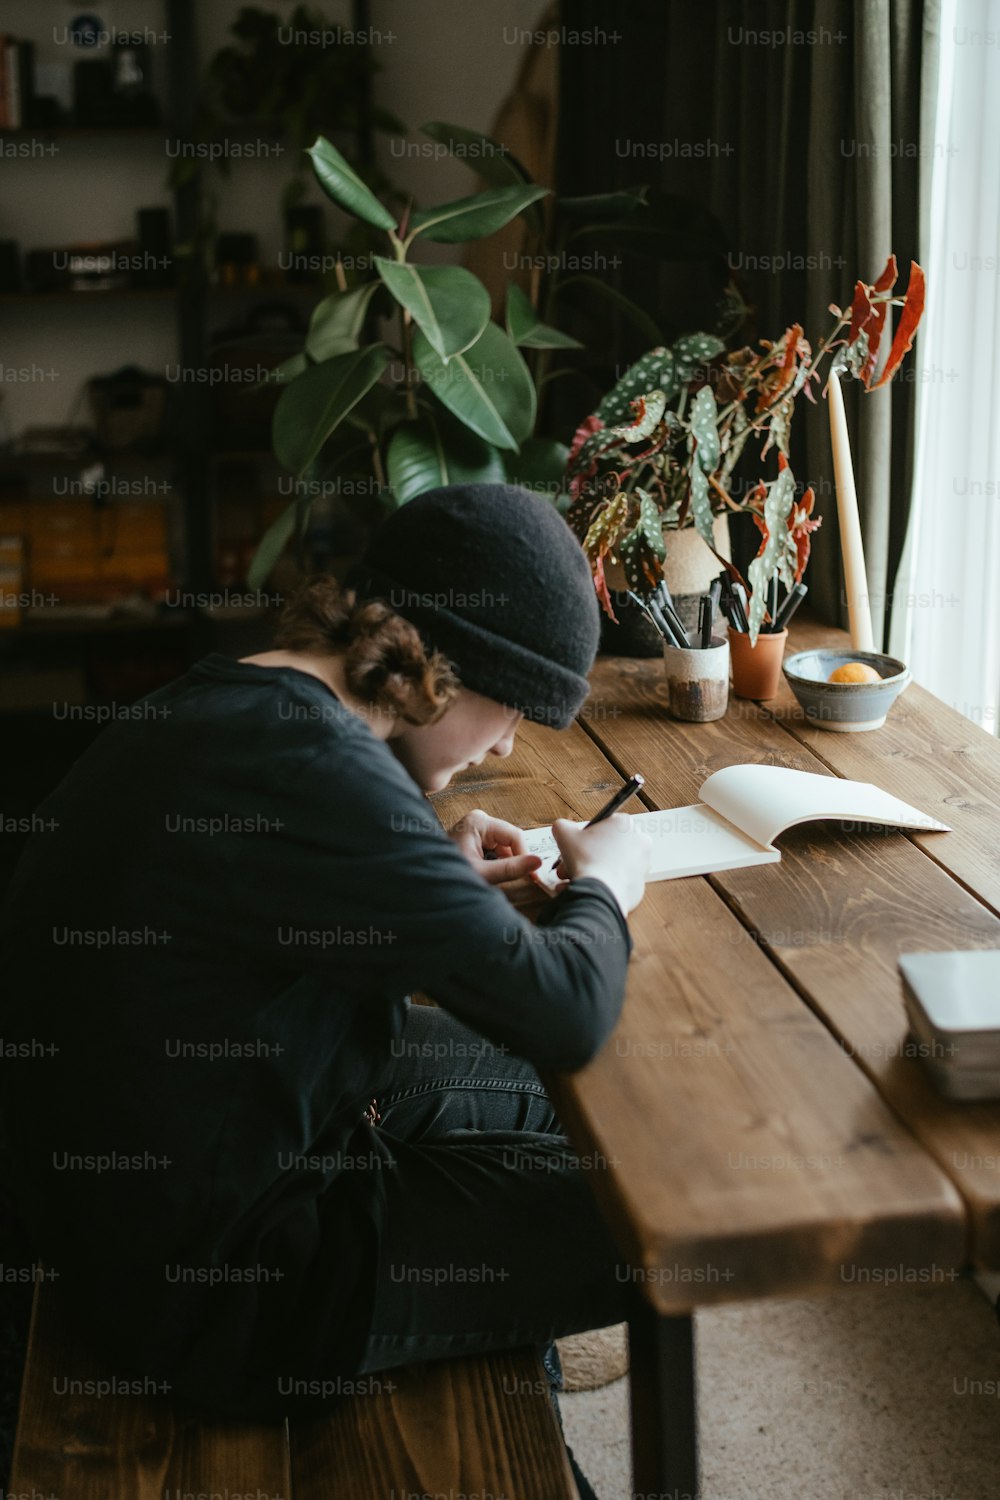 una persona seduta a un tavolo che scrive su un pezzo di carta